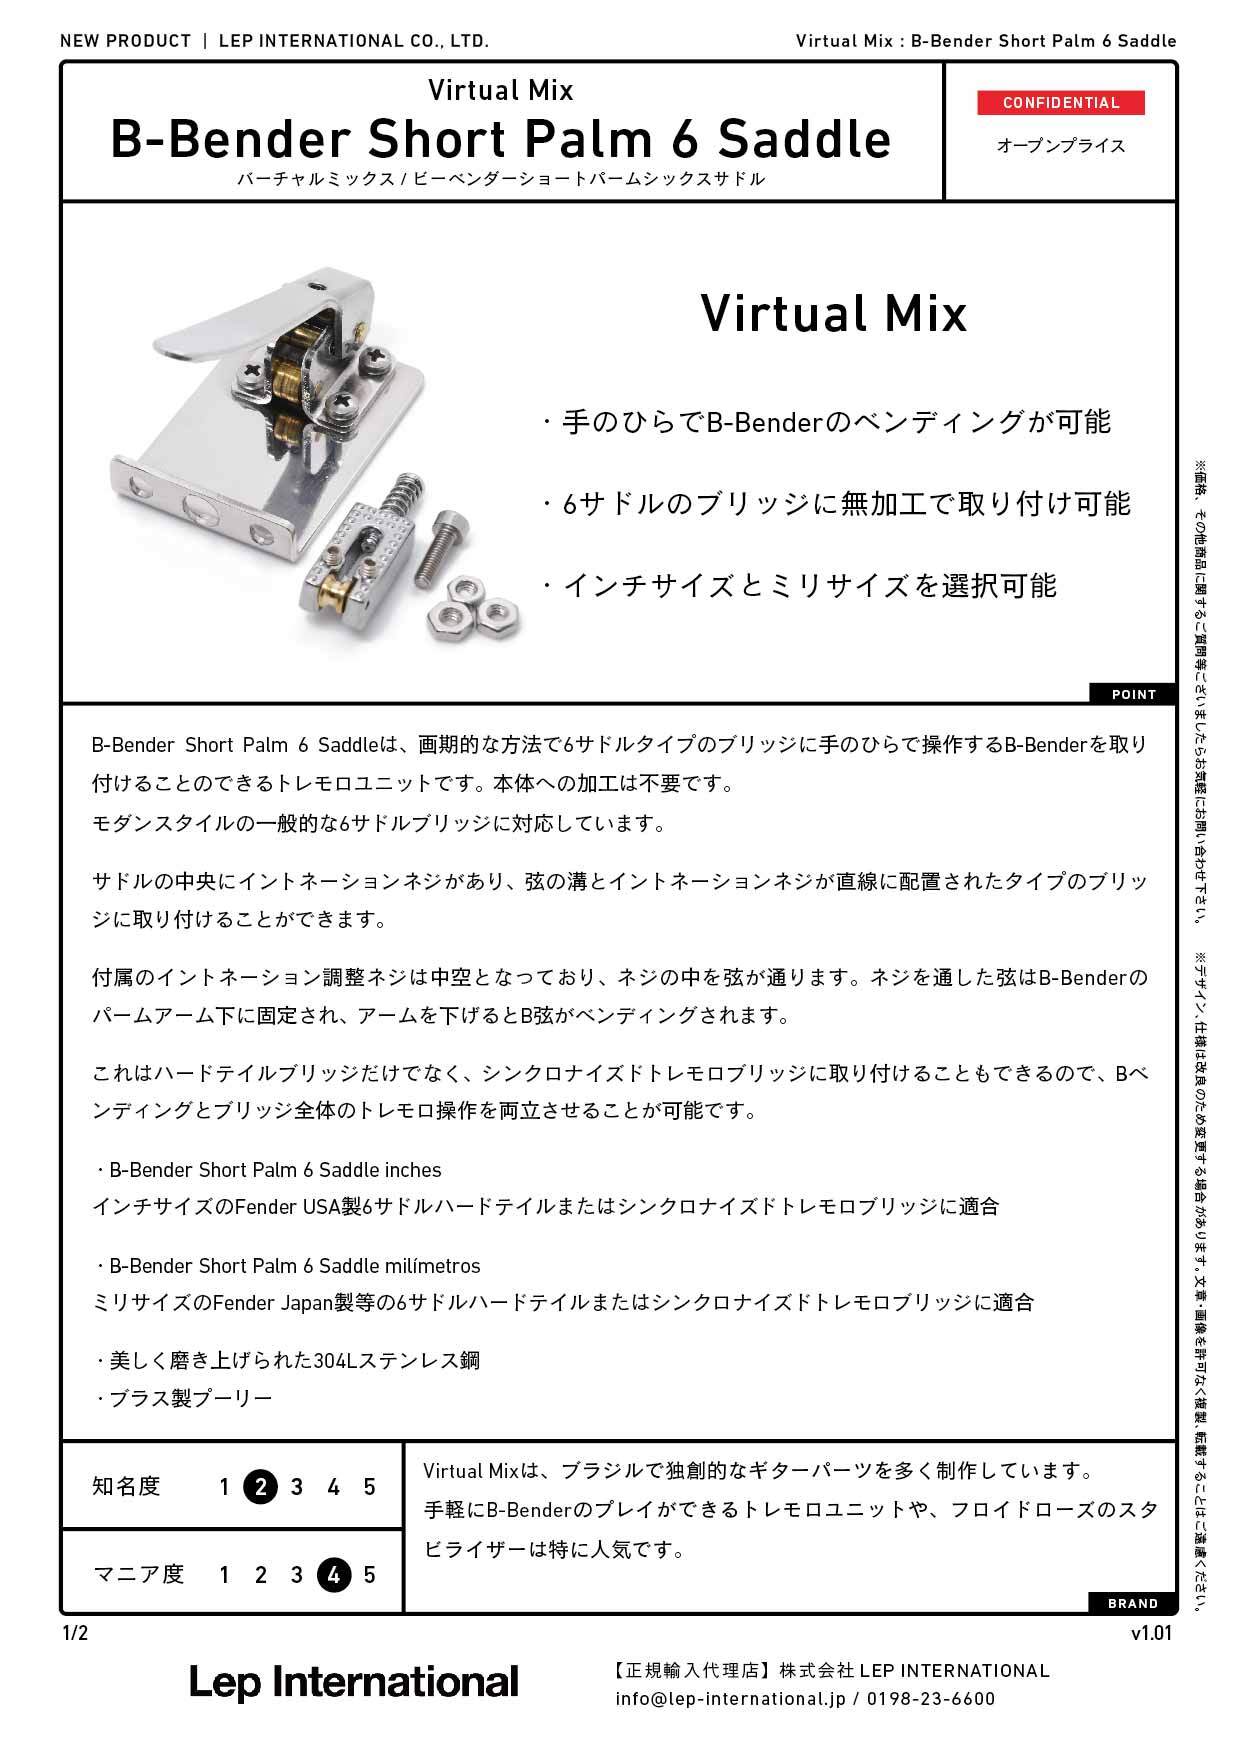 Virtual Mix / B-Bender Short Palm 6 Saddle